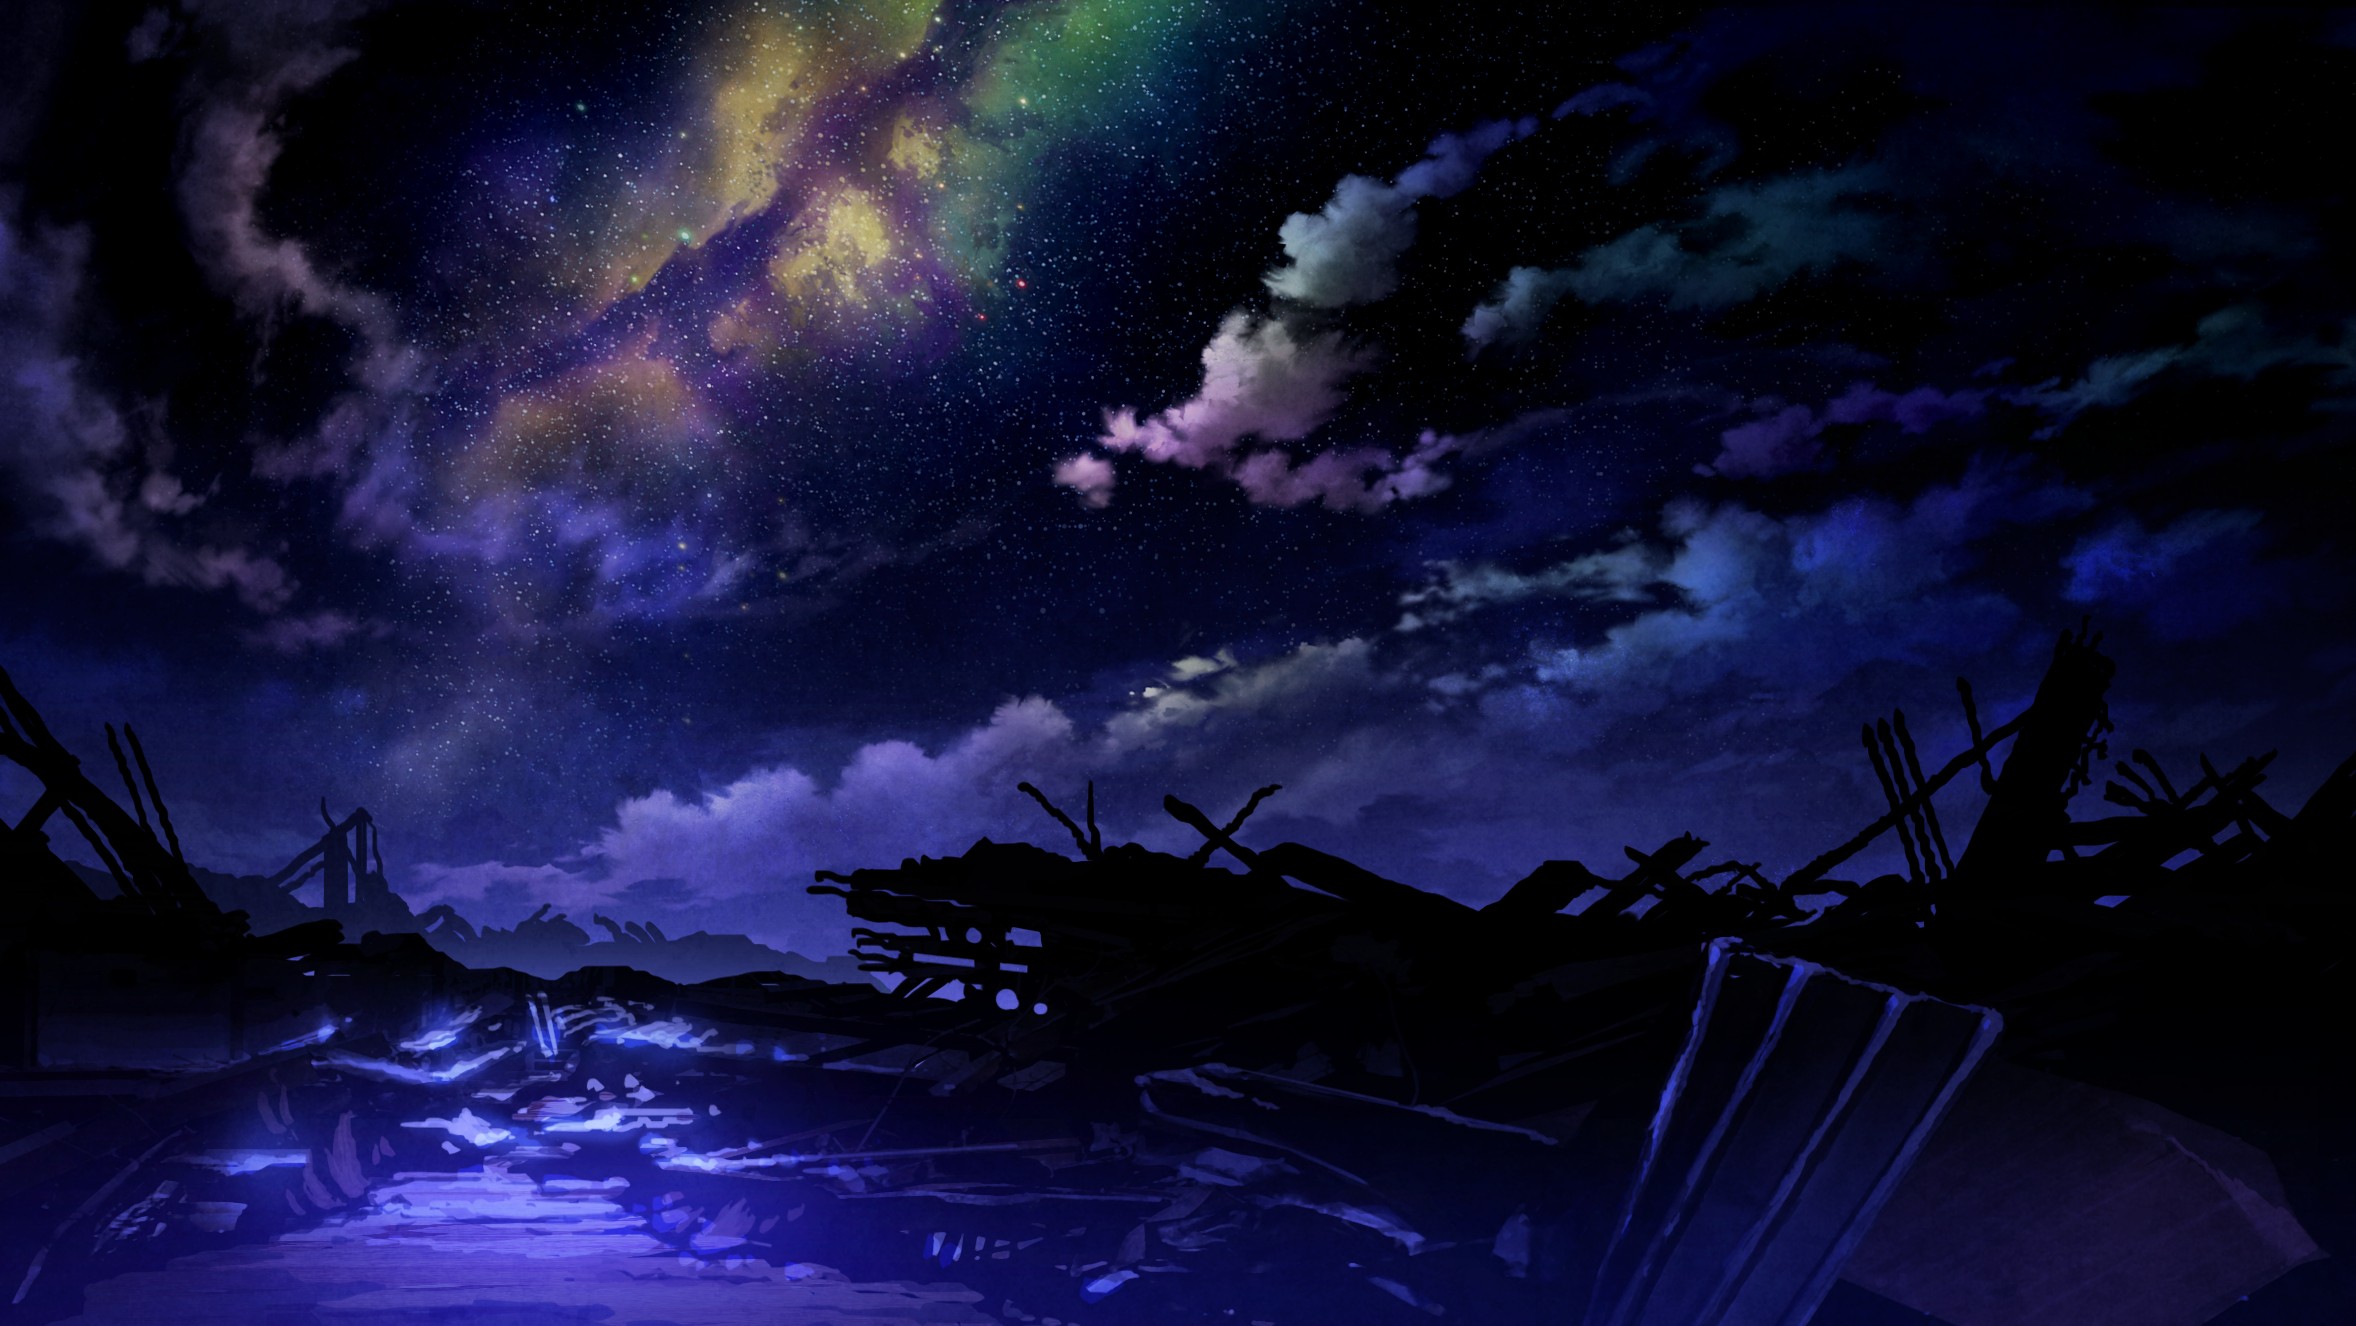 Anime 2356x1326 Technoheart anime apocalyptic fantasy art sky space stars ruins